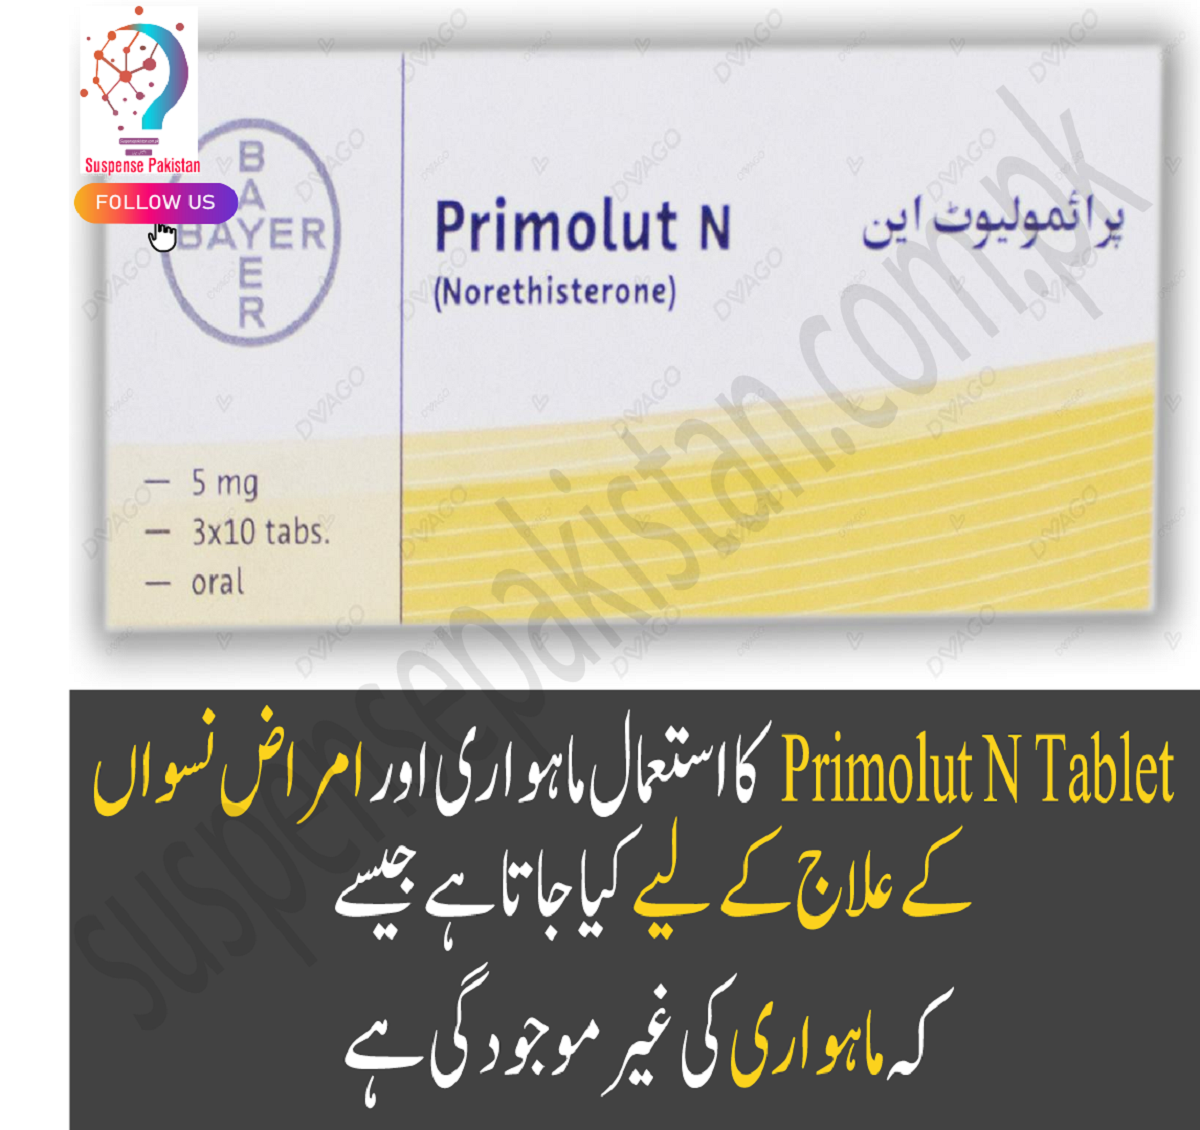 Primolut n tablet uses in Urdu